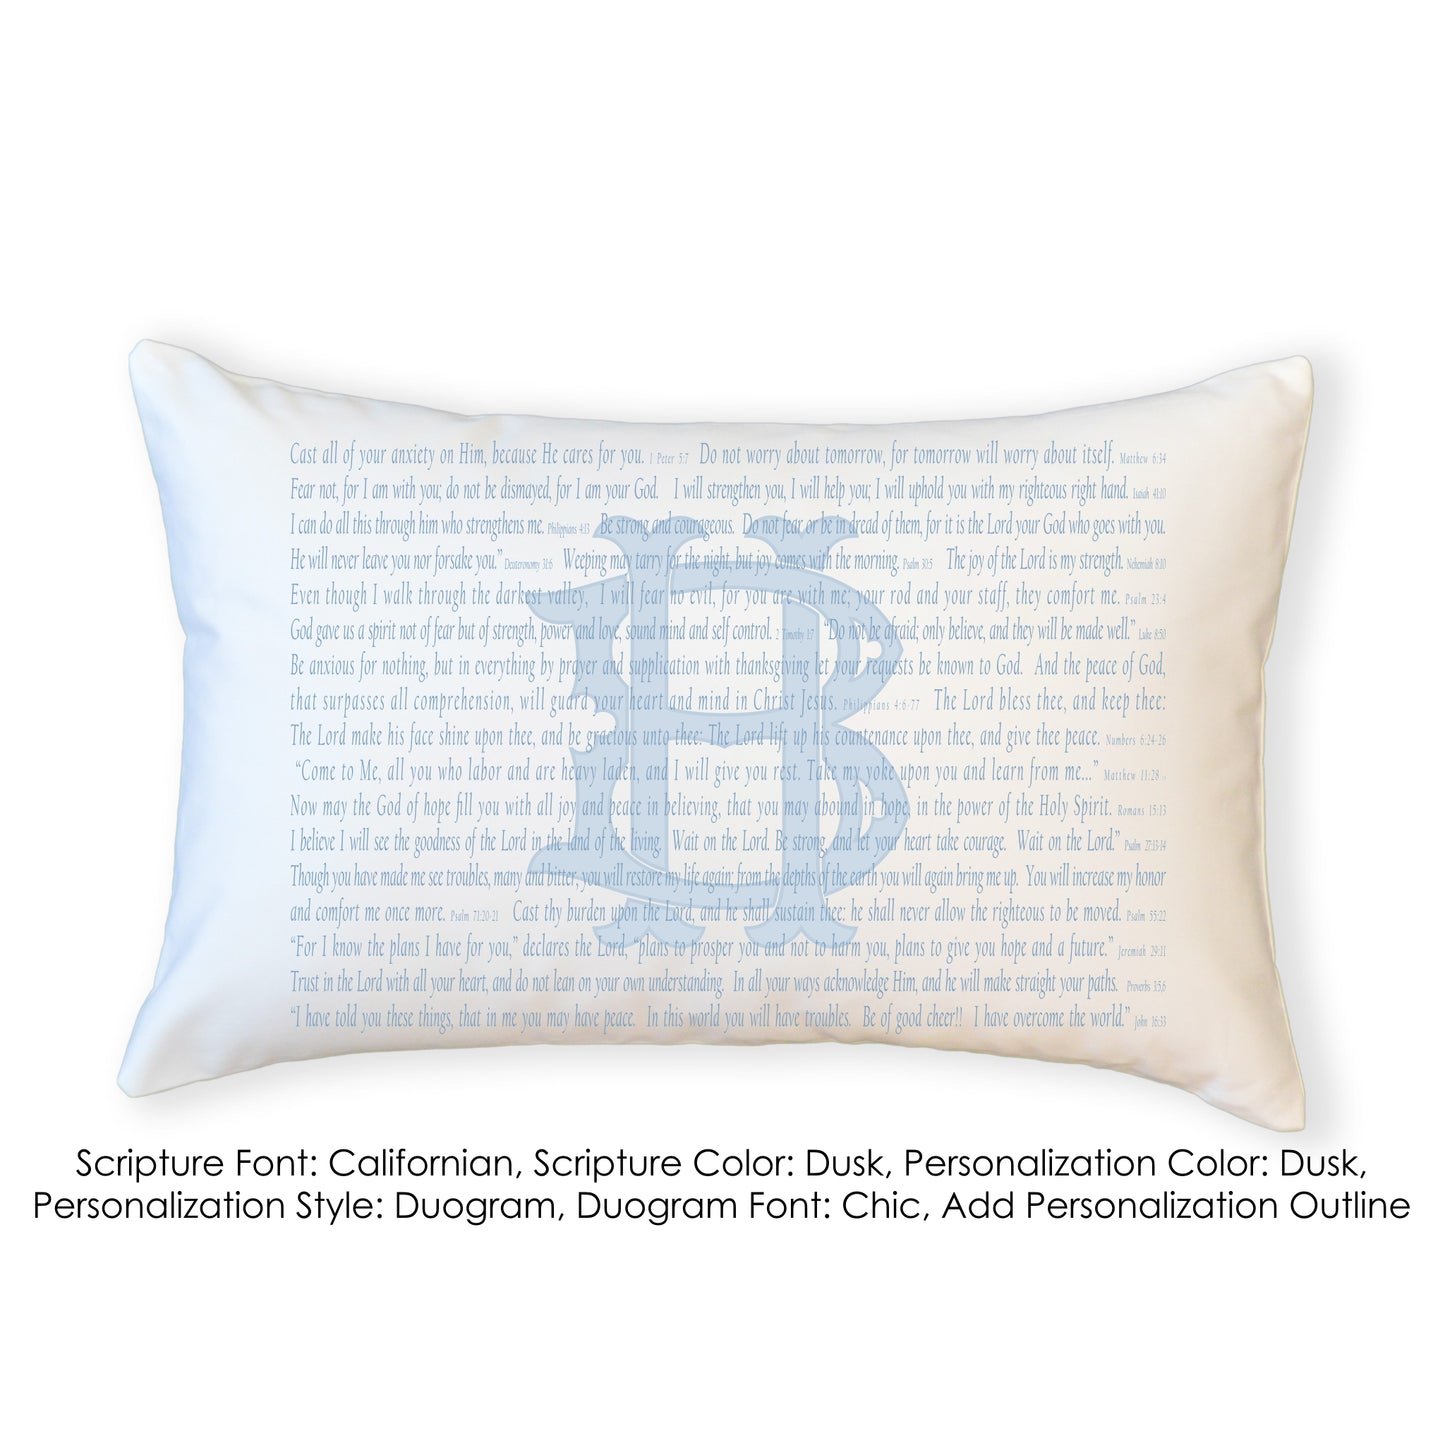 Scripture for Comfort (Cast) - Boudoir Pillow